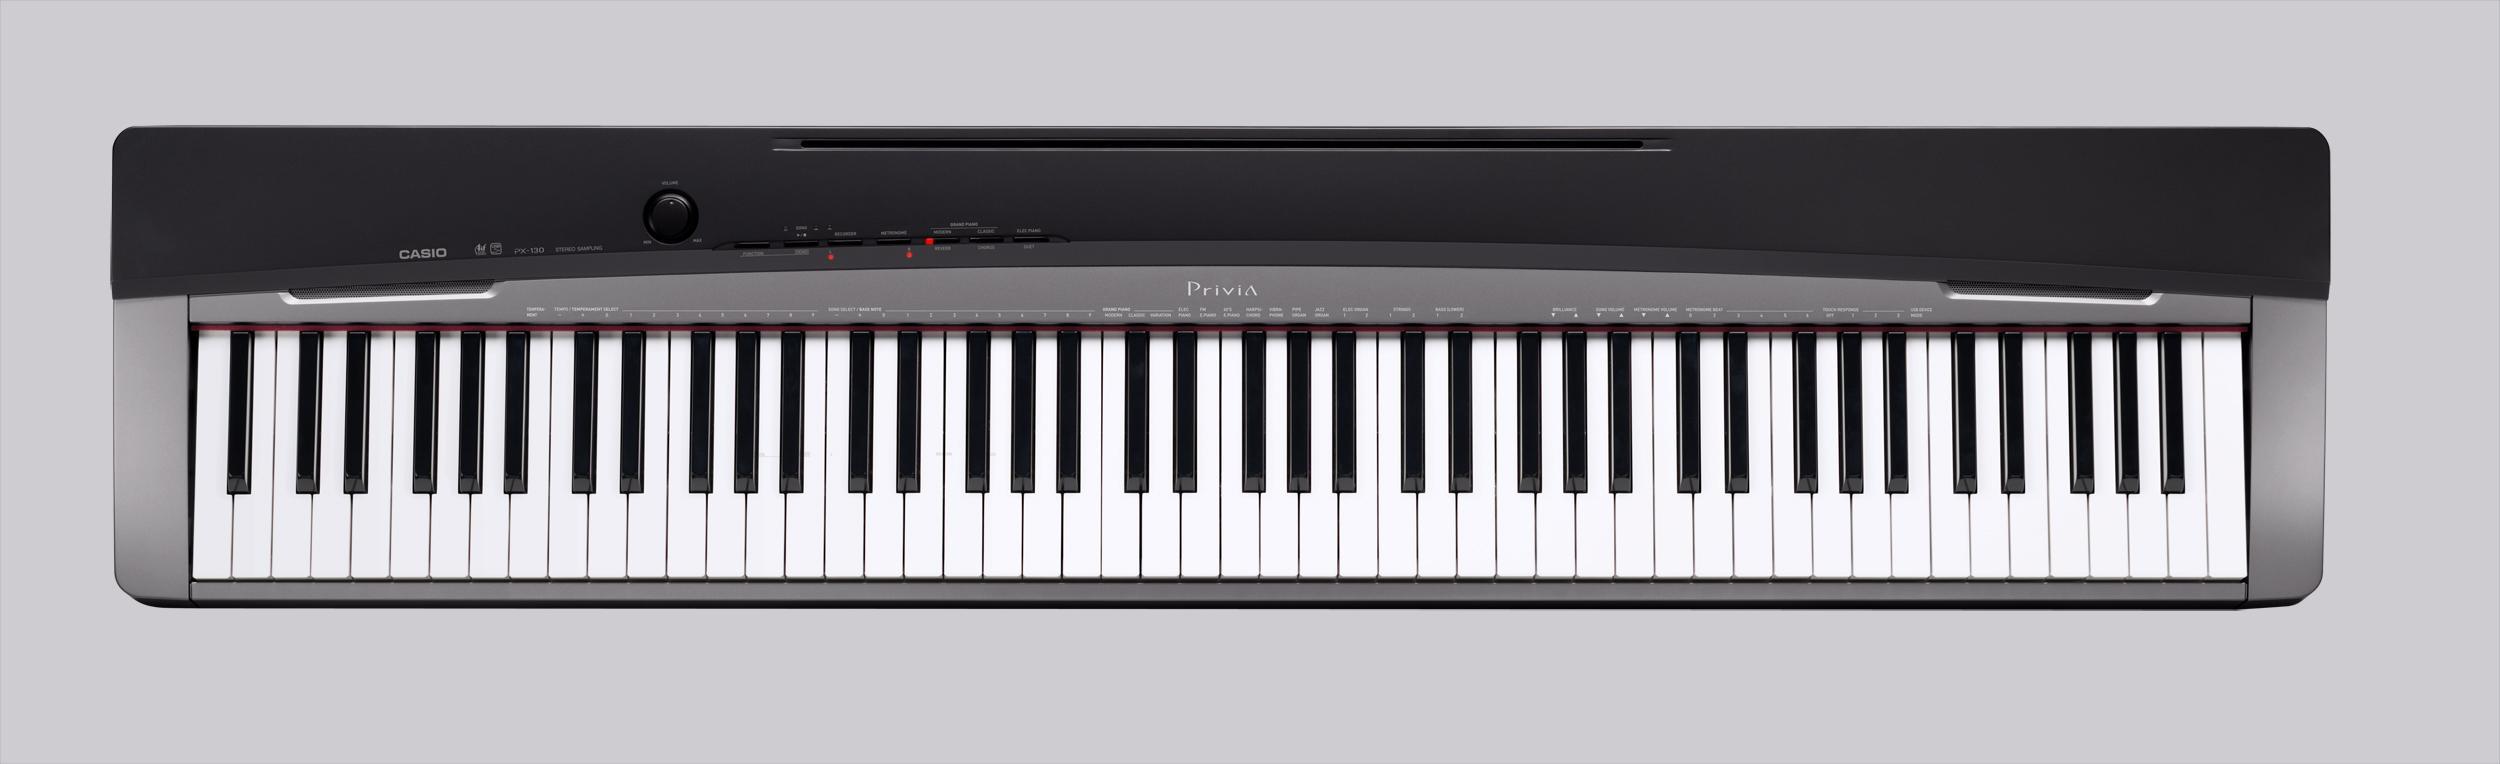 電子ピアノ(CASIO Privia PX-130) - 鍵盤楽器、ピアノ